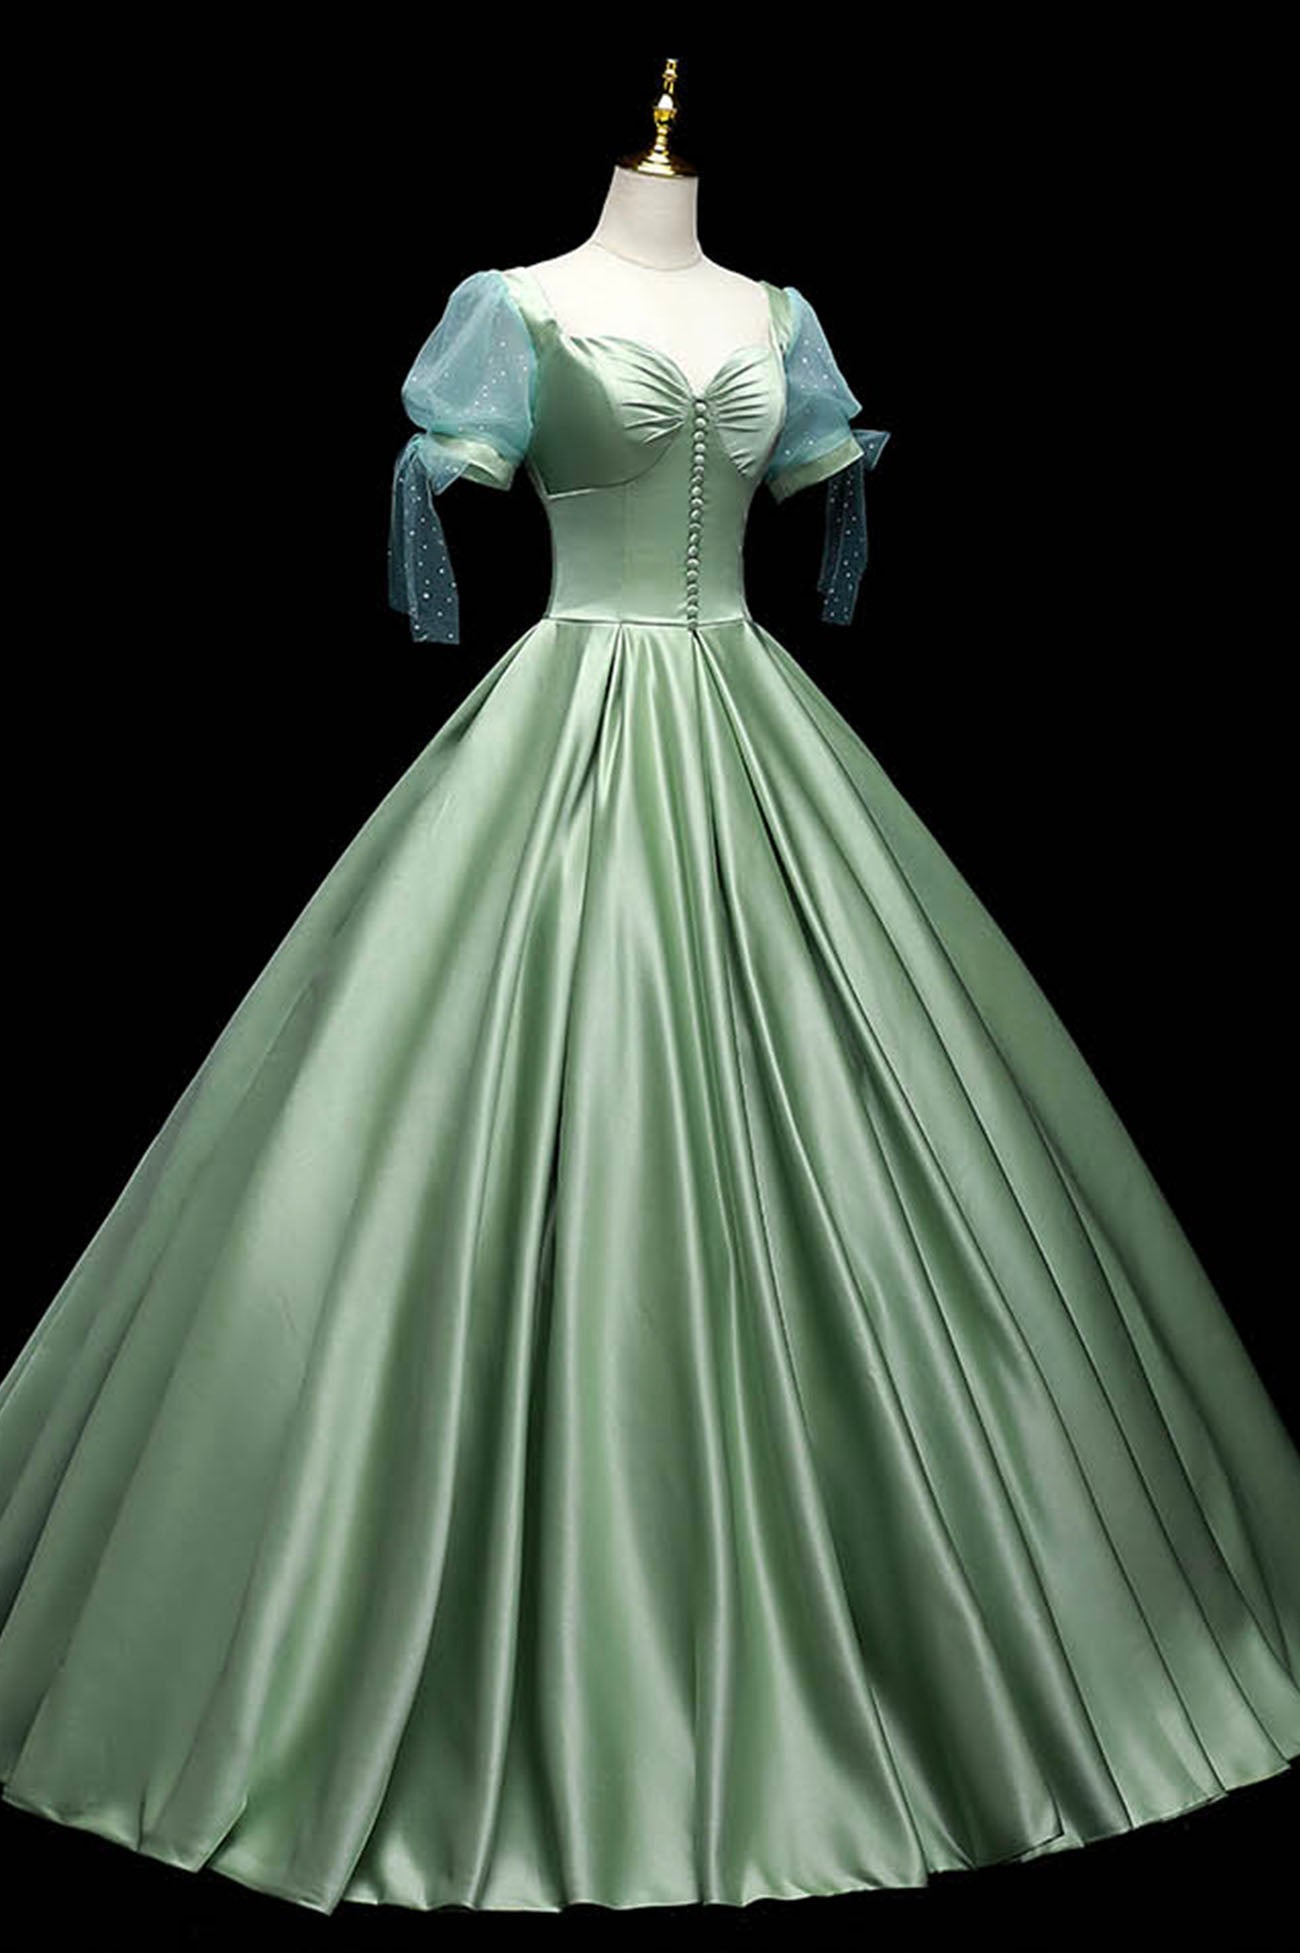 Party Dress Mini, Green Satin Long A-Line Ball Gown, Short Sleeve Green Formal Evening Dress